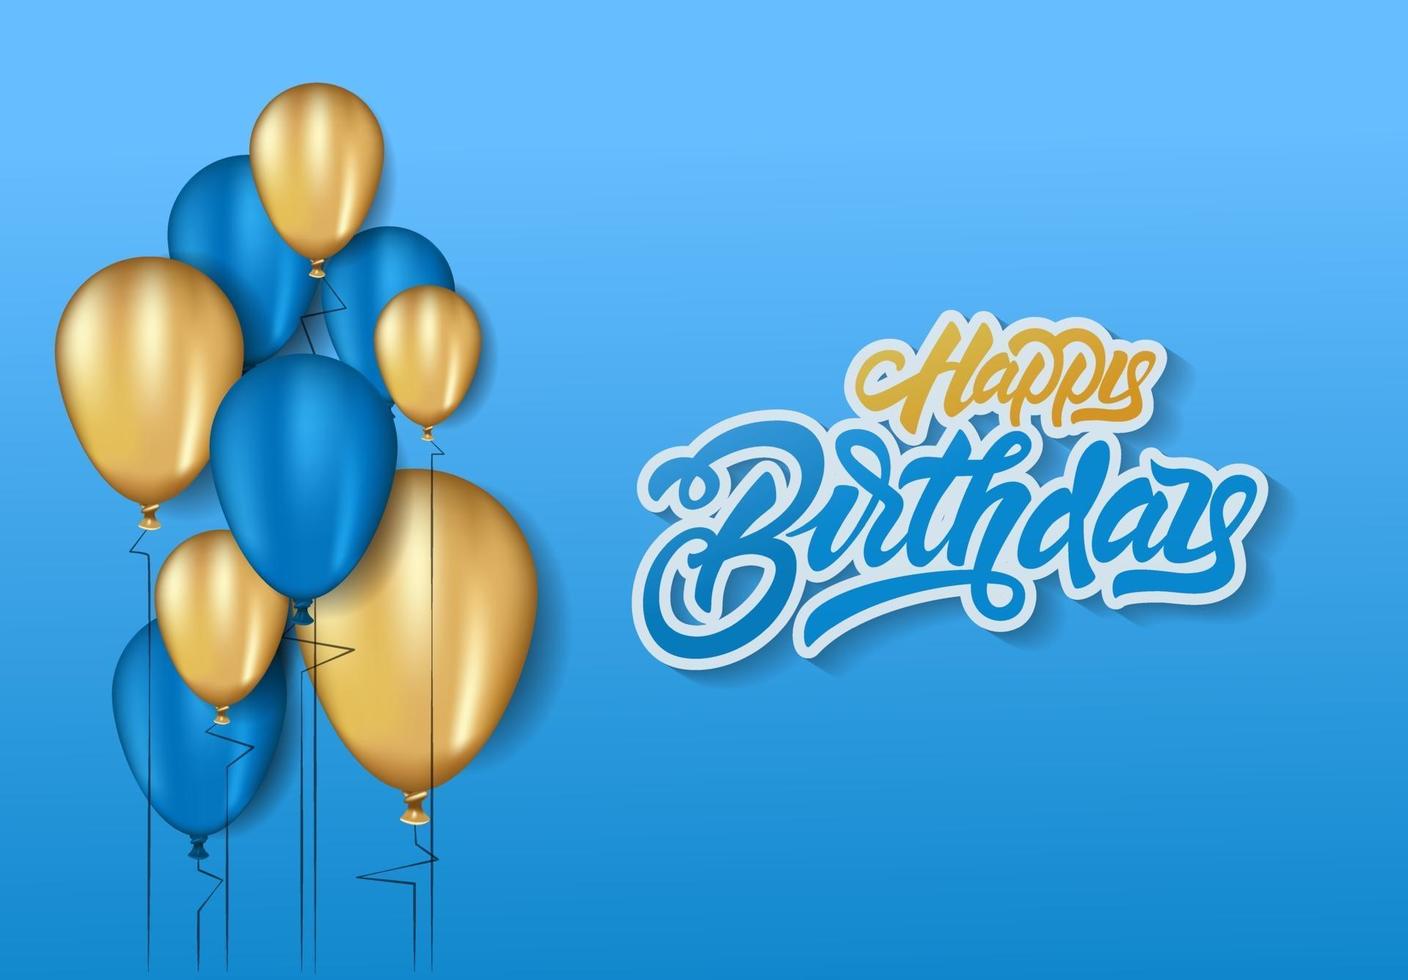 Grattis på födelsedagen i bokstäver bakgrund firande design för gratulationskort, affisch eller banner med ballong, konfetti och lutningar. vektor